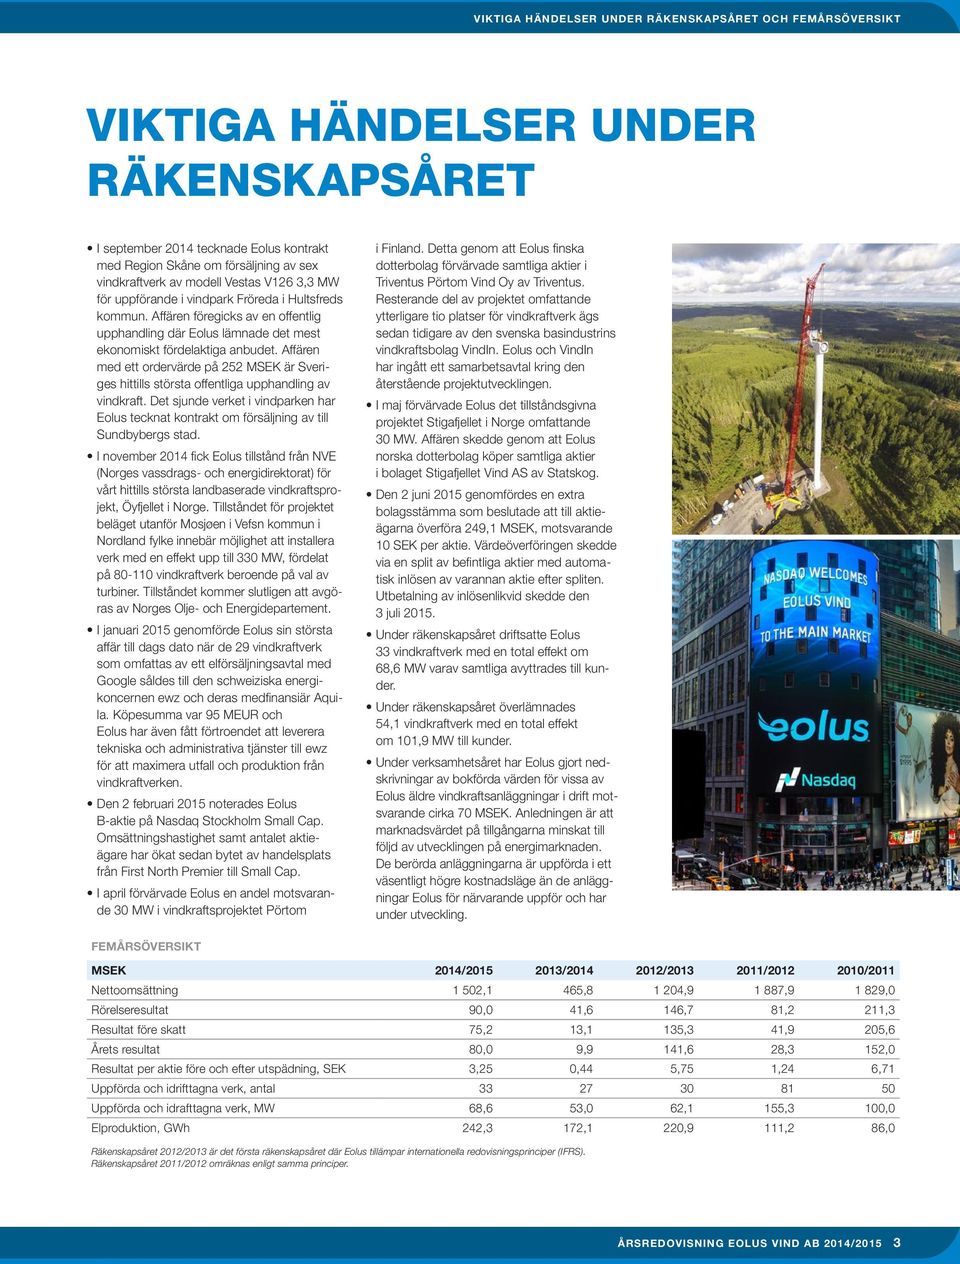 Affären med ett ordervärde på 252 MSEK är Sveriges hittills största offentliga upphandling av vindkraft.